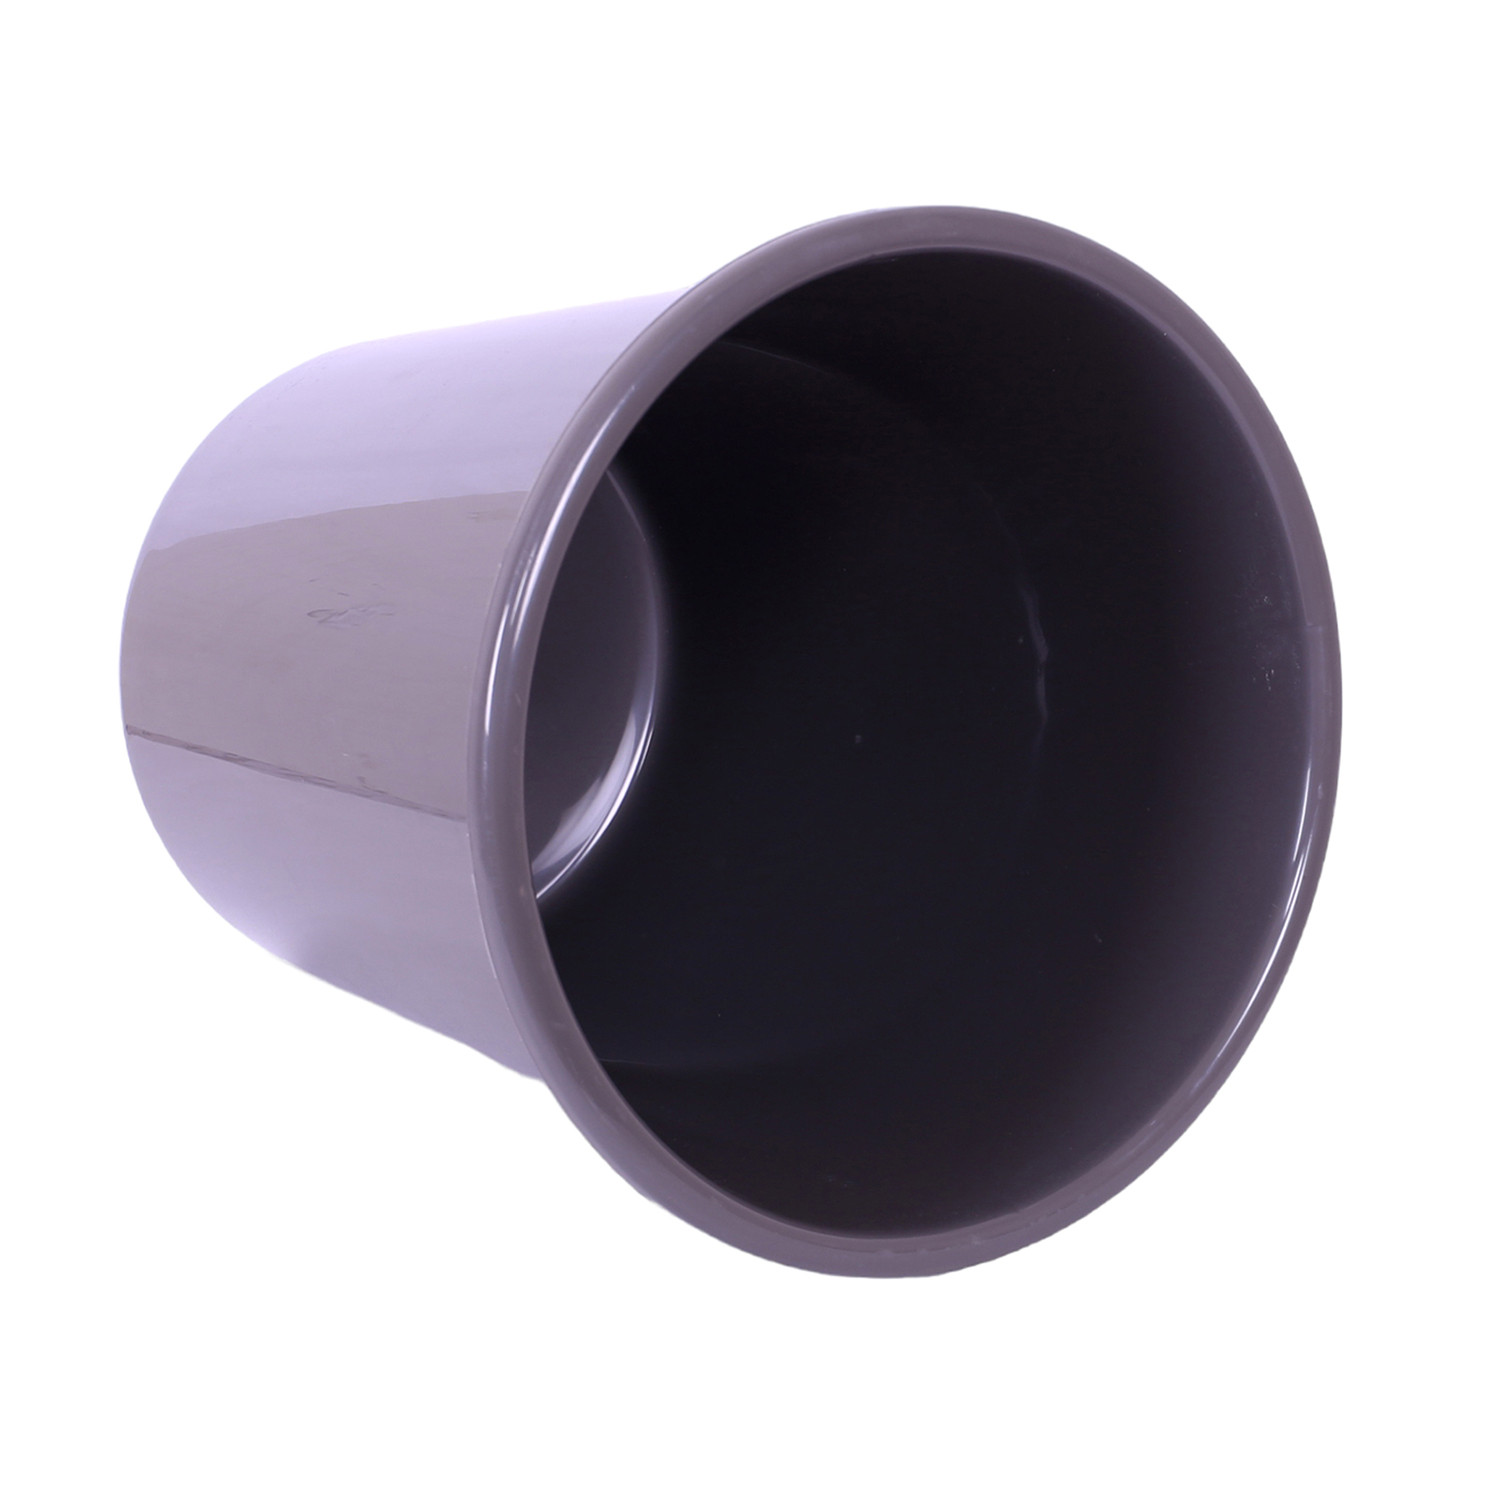 Kuber Industries Dustbin | Open Dustbin | Plastic Garbage Dustbin | Dustbin For Kitchen | Dustbin For Bathroom | Office Dustbin | Plain Sada Dustbin | 7 LTR | 066 | Gray